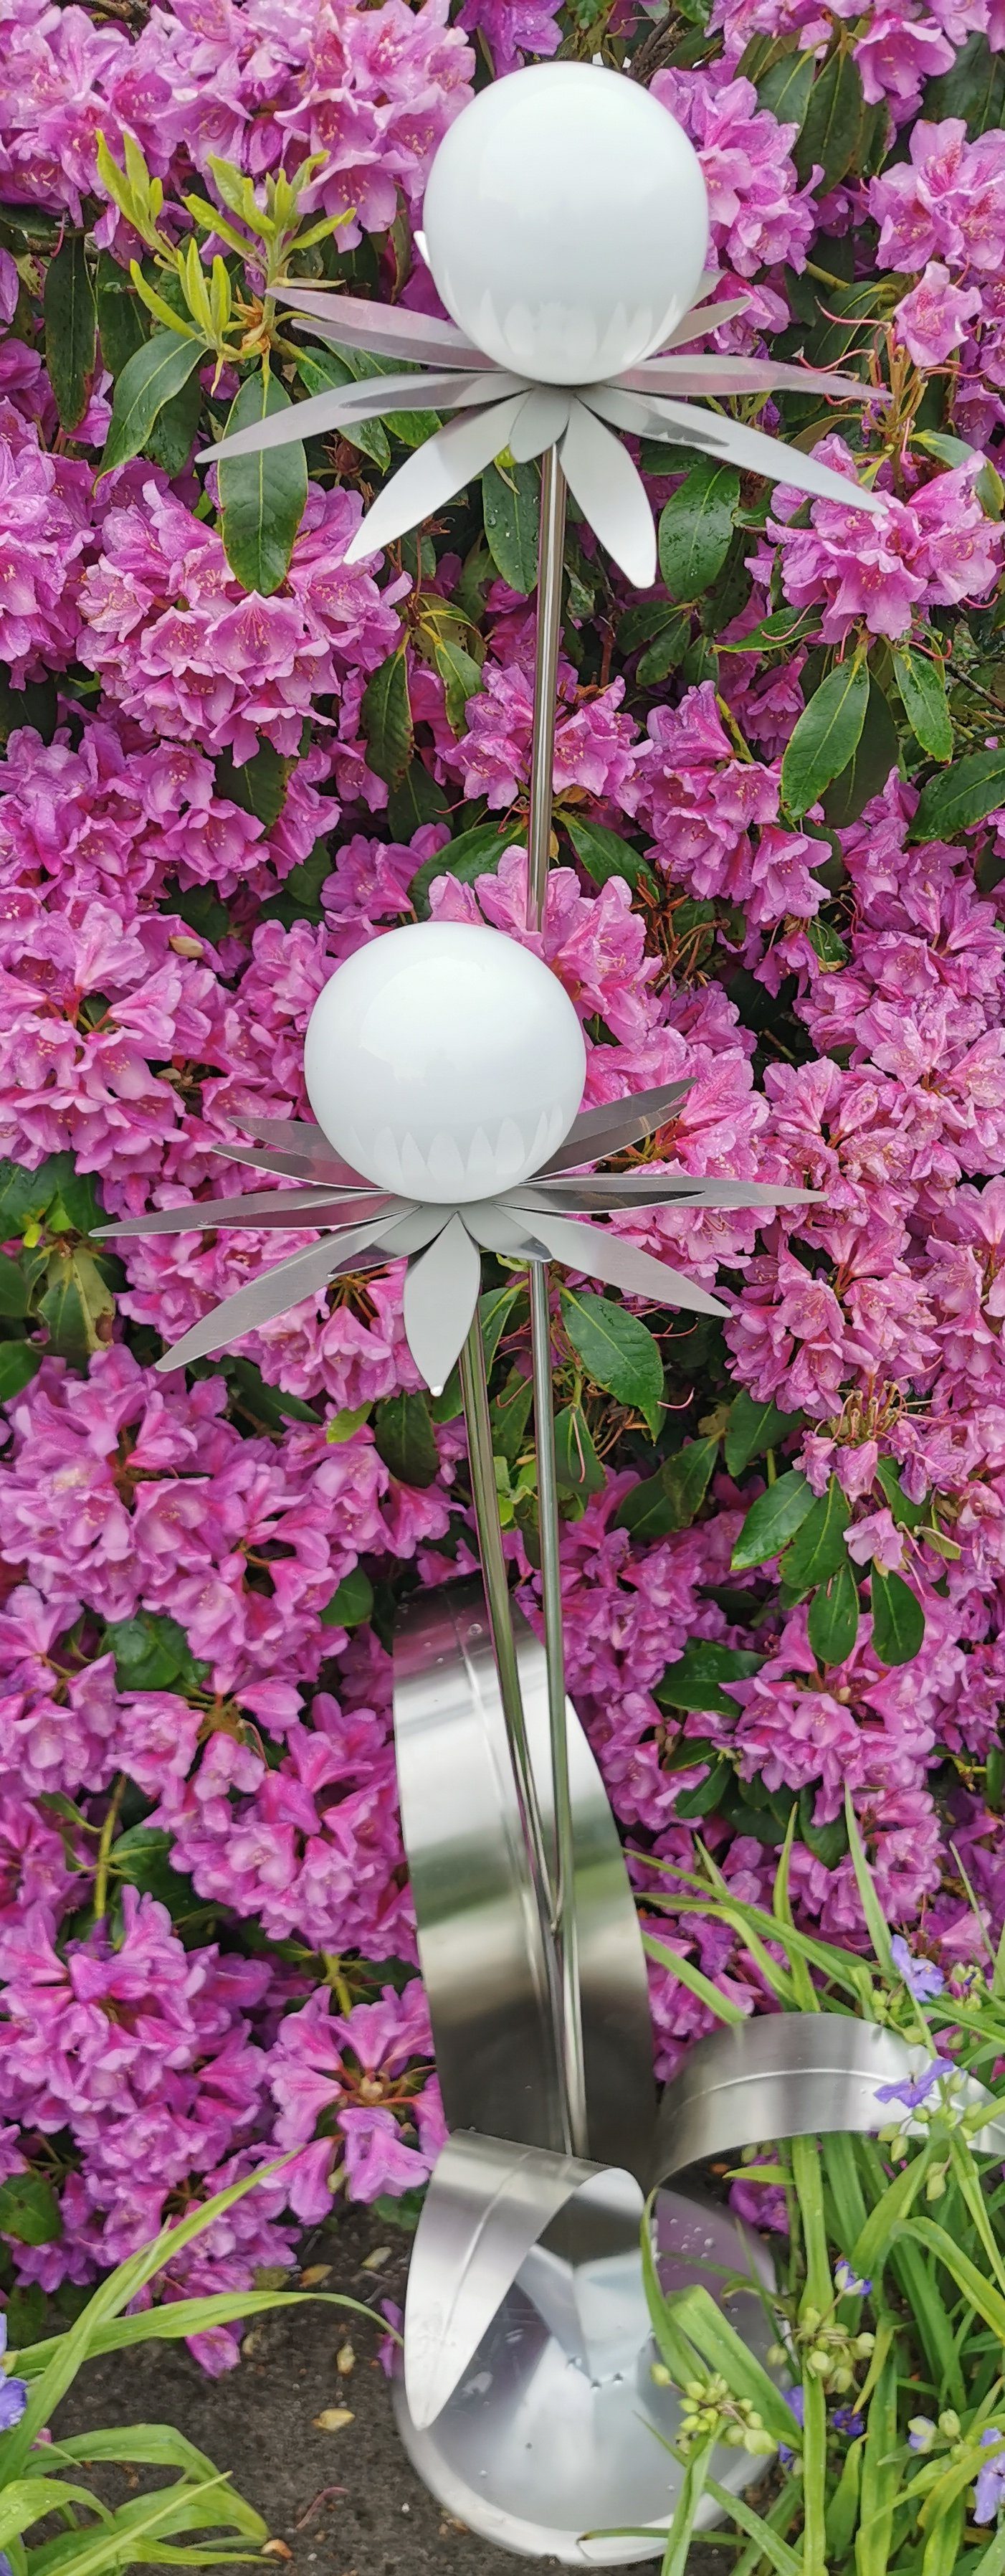 Garten-Ambiente cm weiß Bocker 120 Jürgen Milano Edelstahl Kugel Skulptur poliert Standfuß Gartenstecker Blume